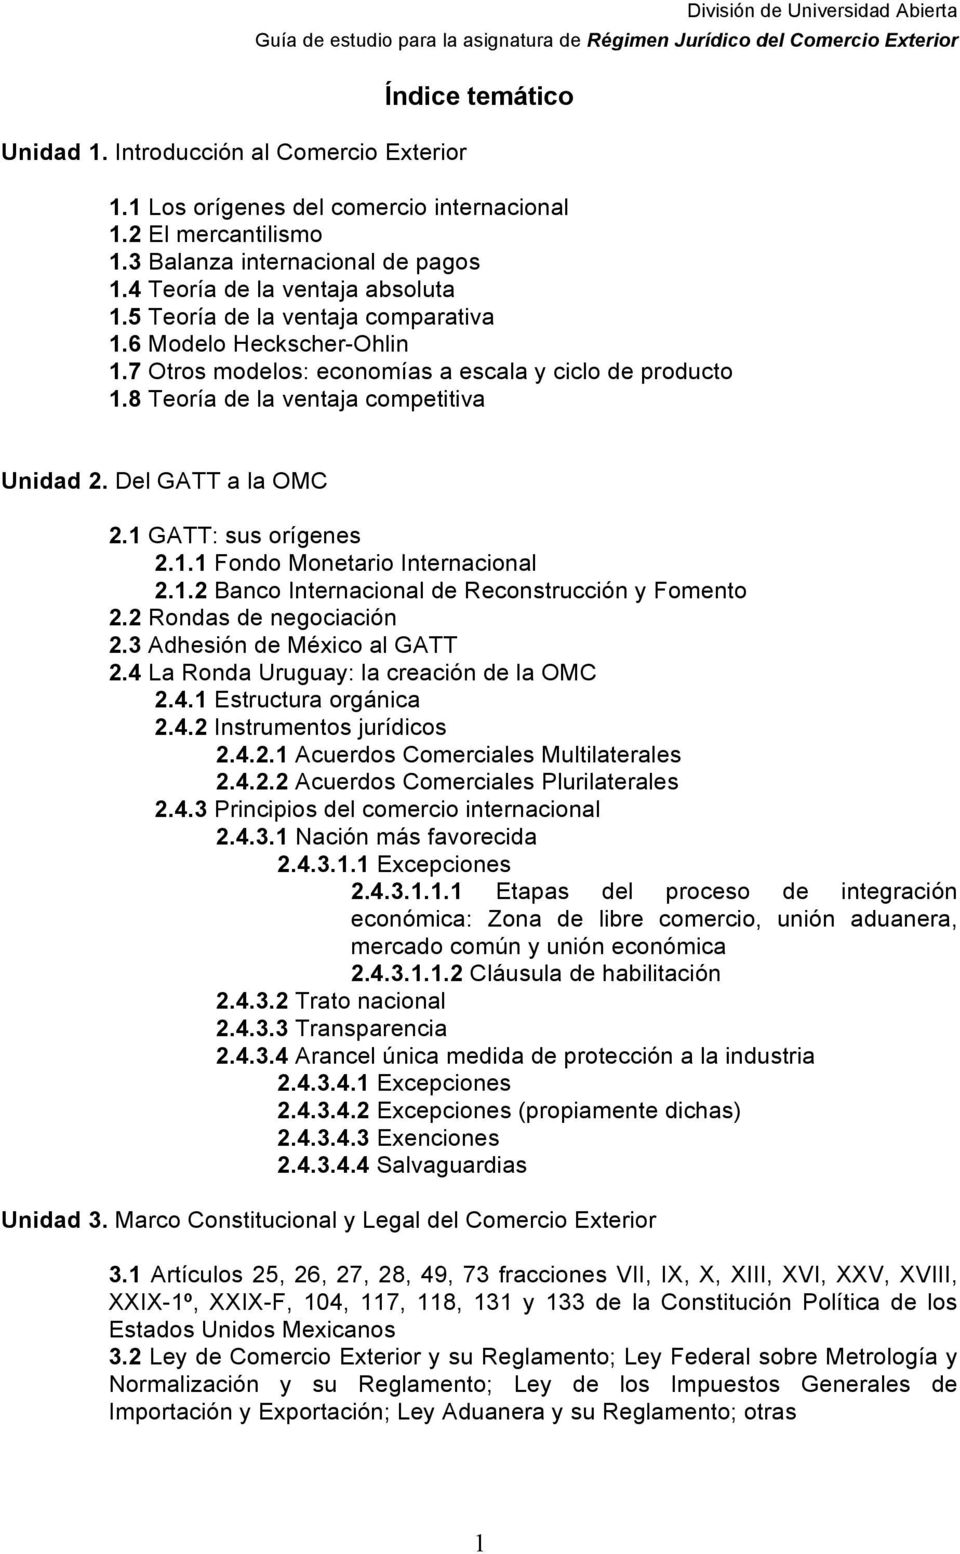 Del GATT a la OMC 2.1 GATT: sus rígenes 2.1.1 Fnd Mnetari Internacinal 2.1.2 Banc Internacinal de Recnstrucción y Fment 2.2 Rndas de negciación 2.3 Adhesión de Méxic al GATT 2.